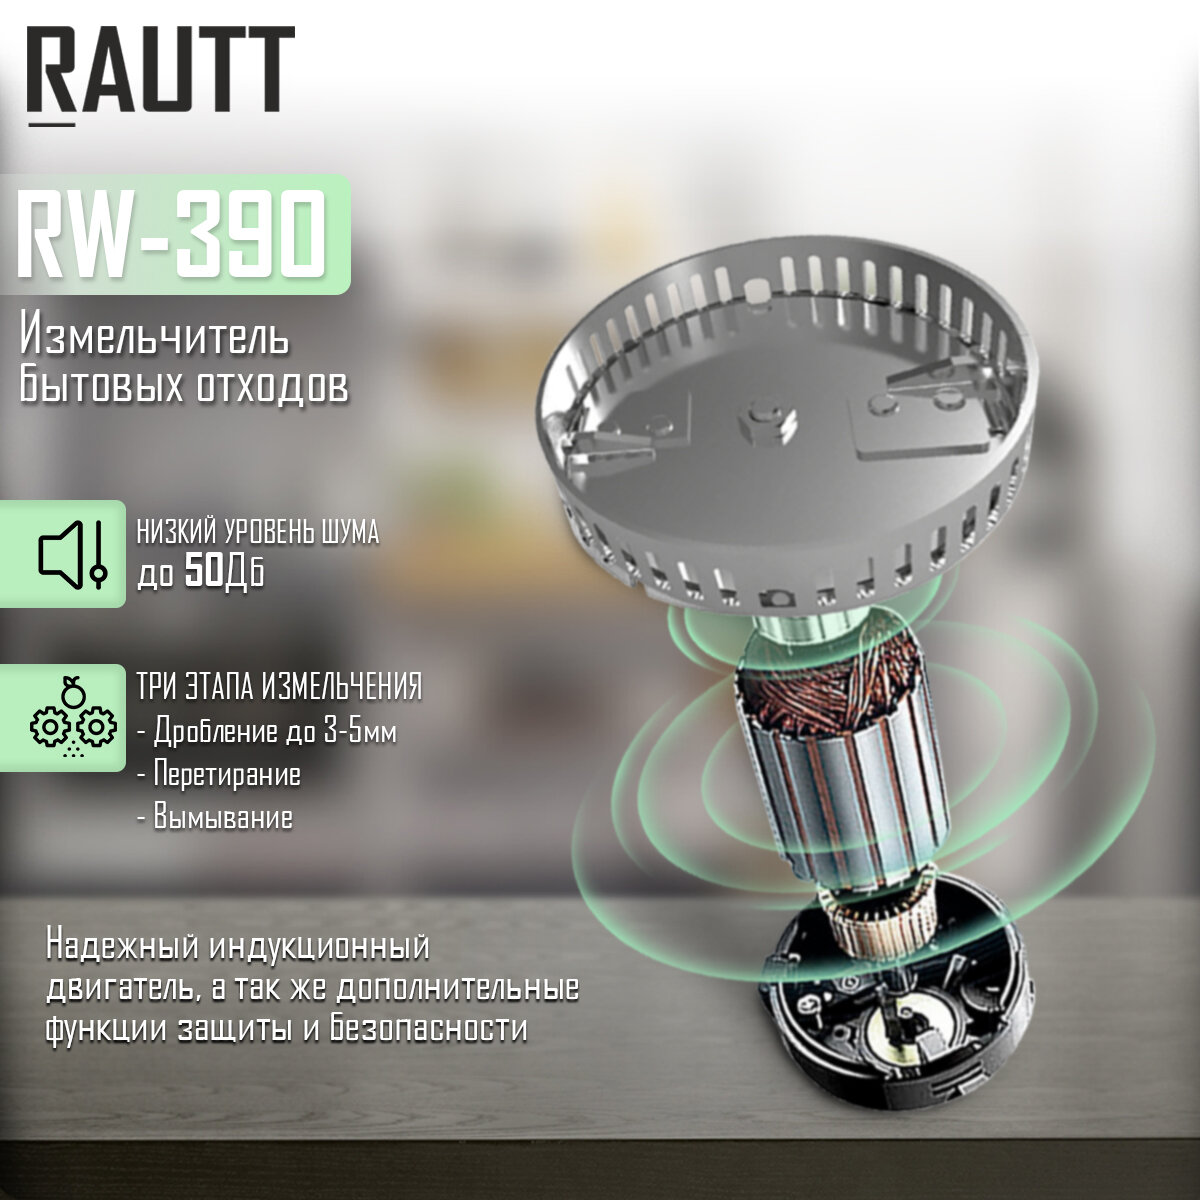 Измельчитель бытовых отходов RAUTT, RW-390, электрический, встраиваемый, 390 Вт, 1500 мл, измельчитель пищевых отходов кухонный - фотография № 3